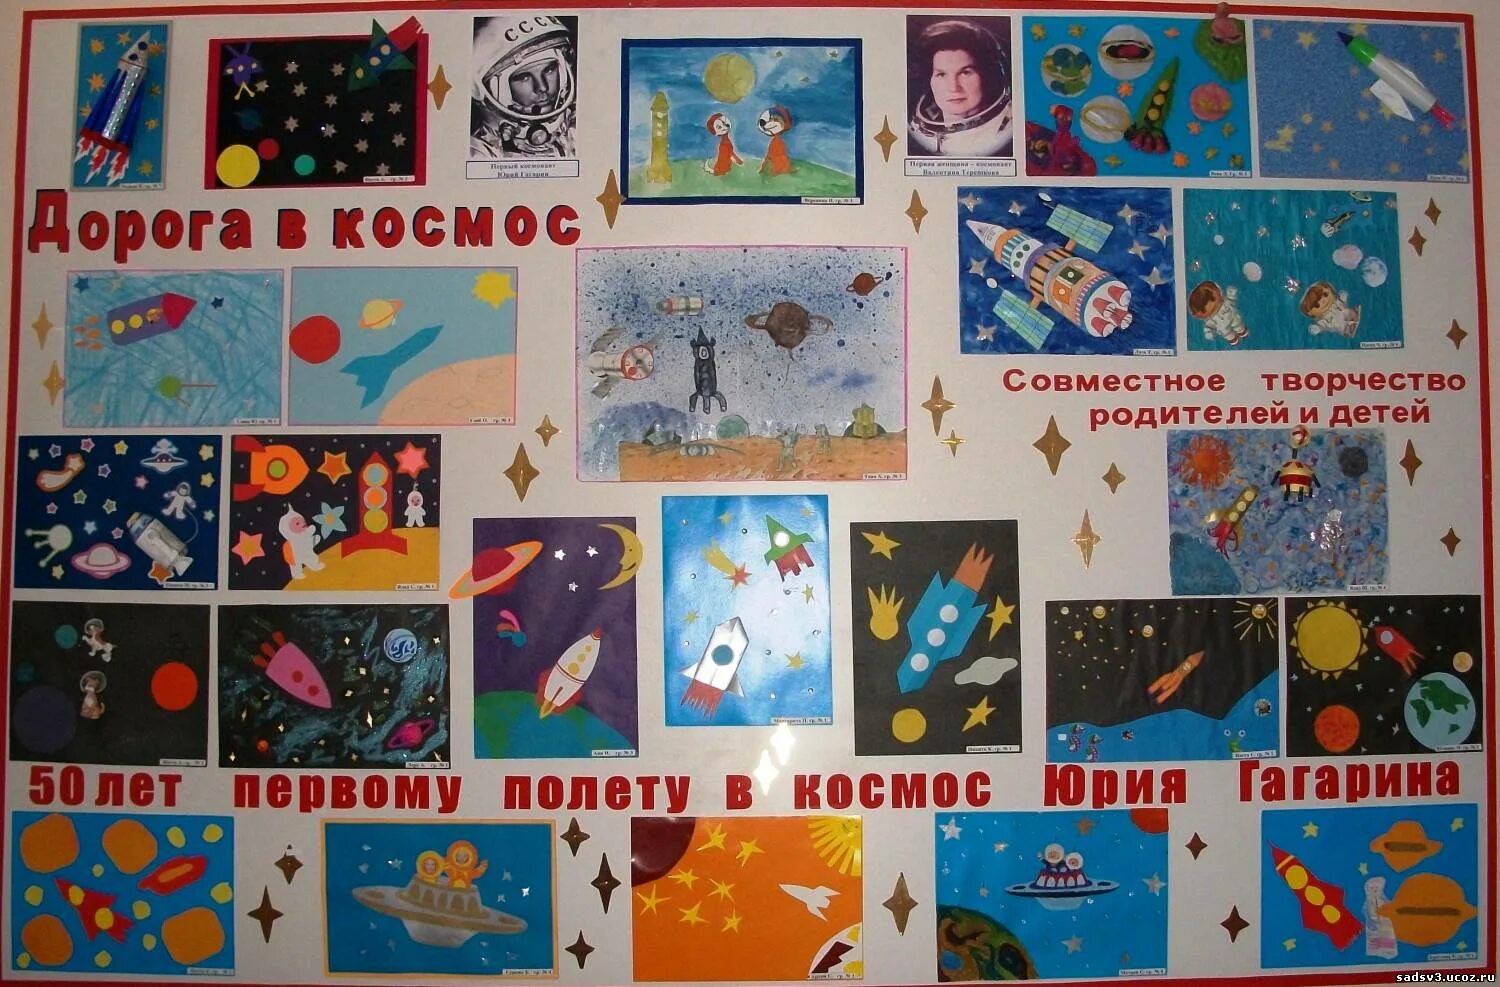 Сценарий концерта ко дню космонавтики. Стенд космос в детском саду. Вытавка детских работ на тему "космос". Плакат ко Дню космонавтики в детском саду. Выставка рисунков ко Дню космонавтики.